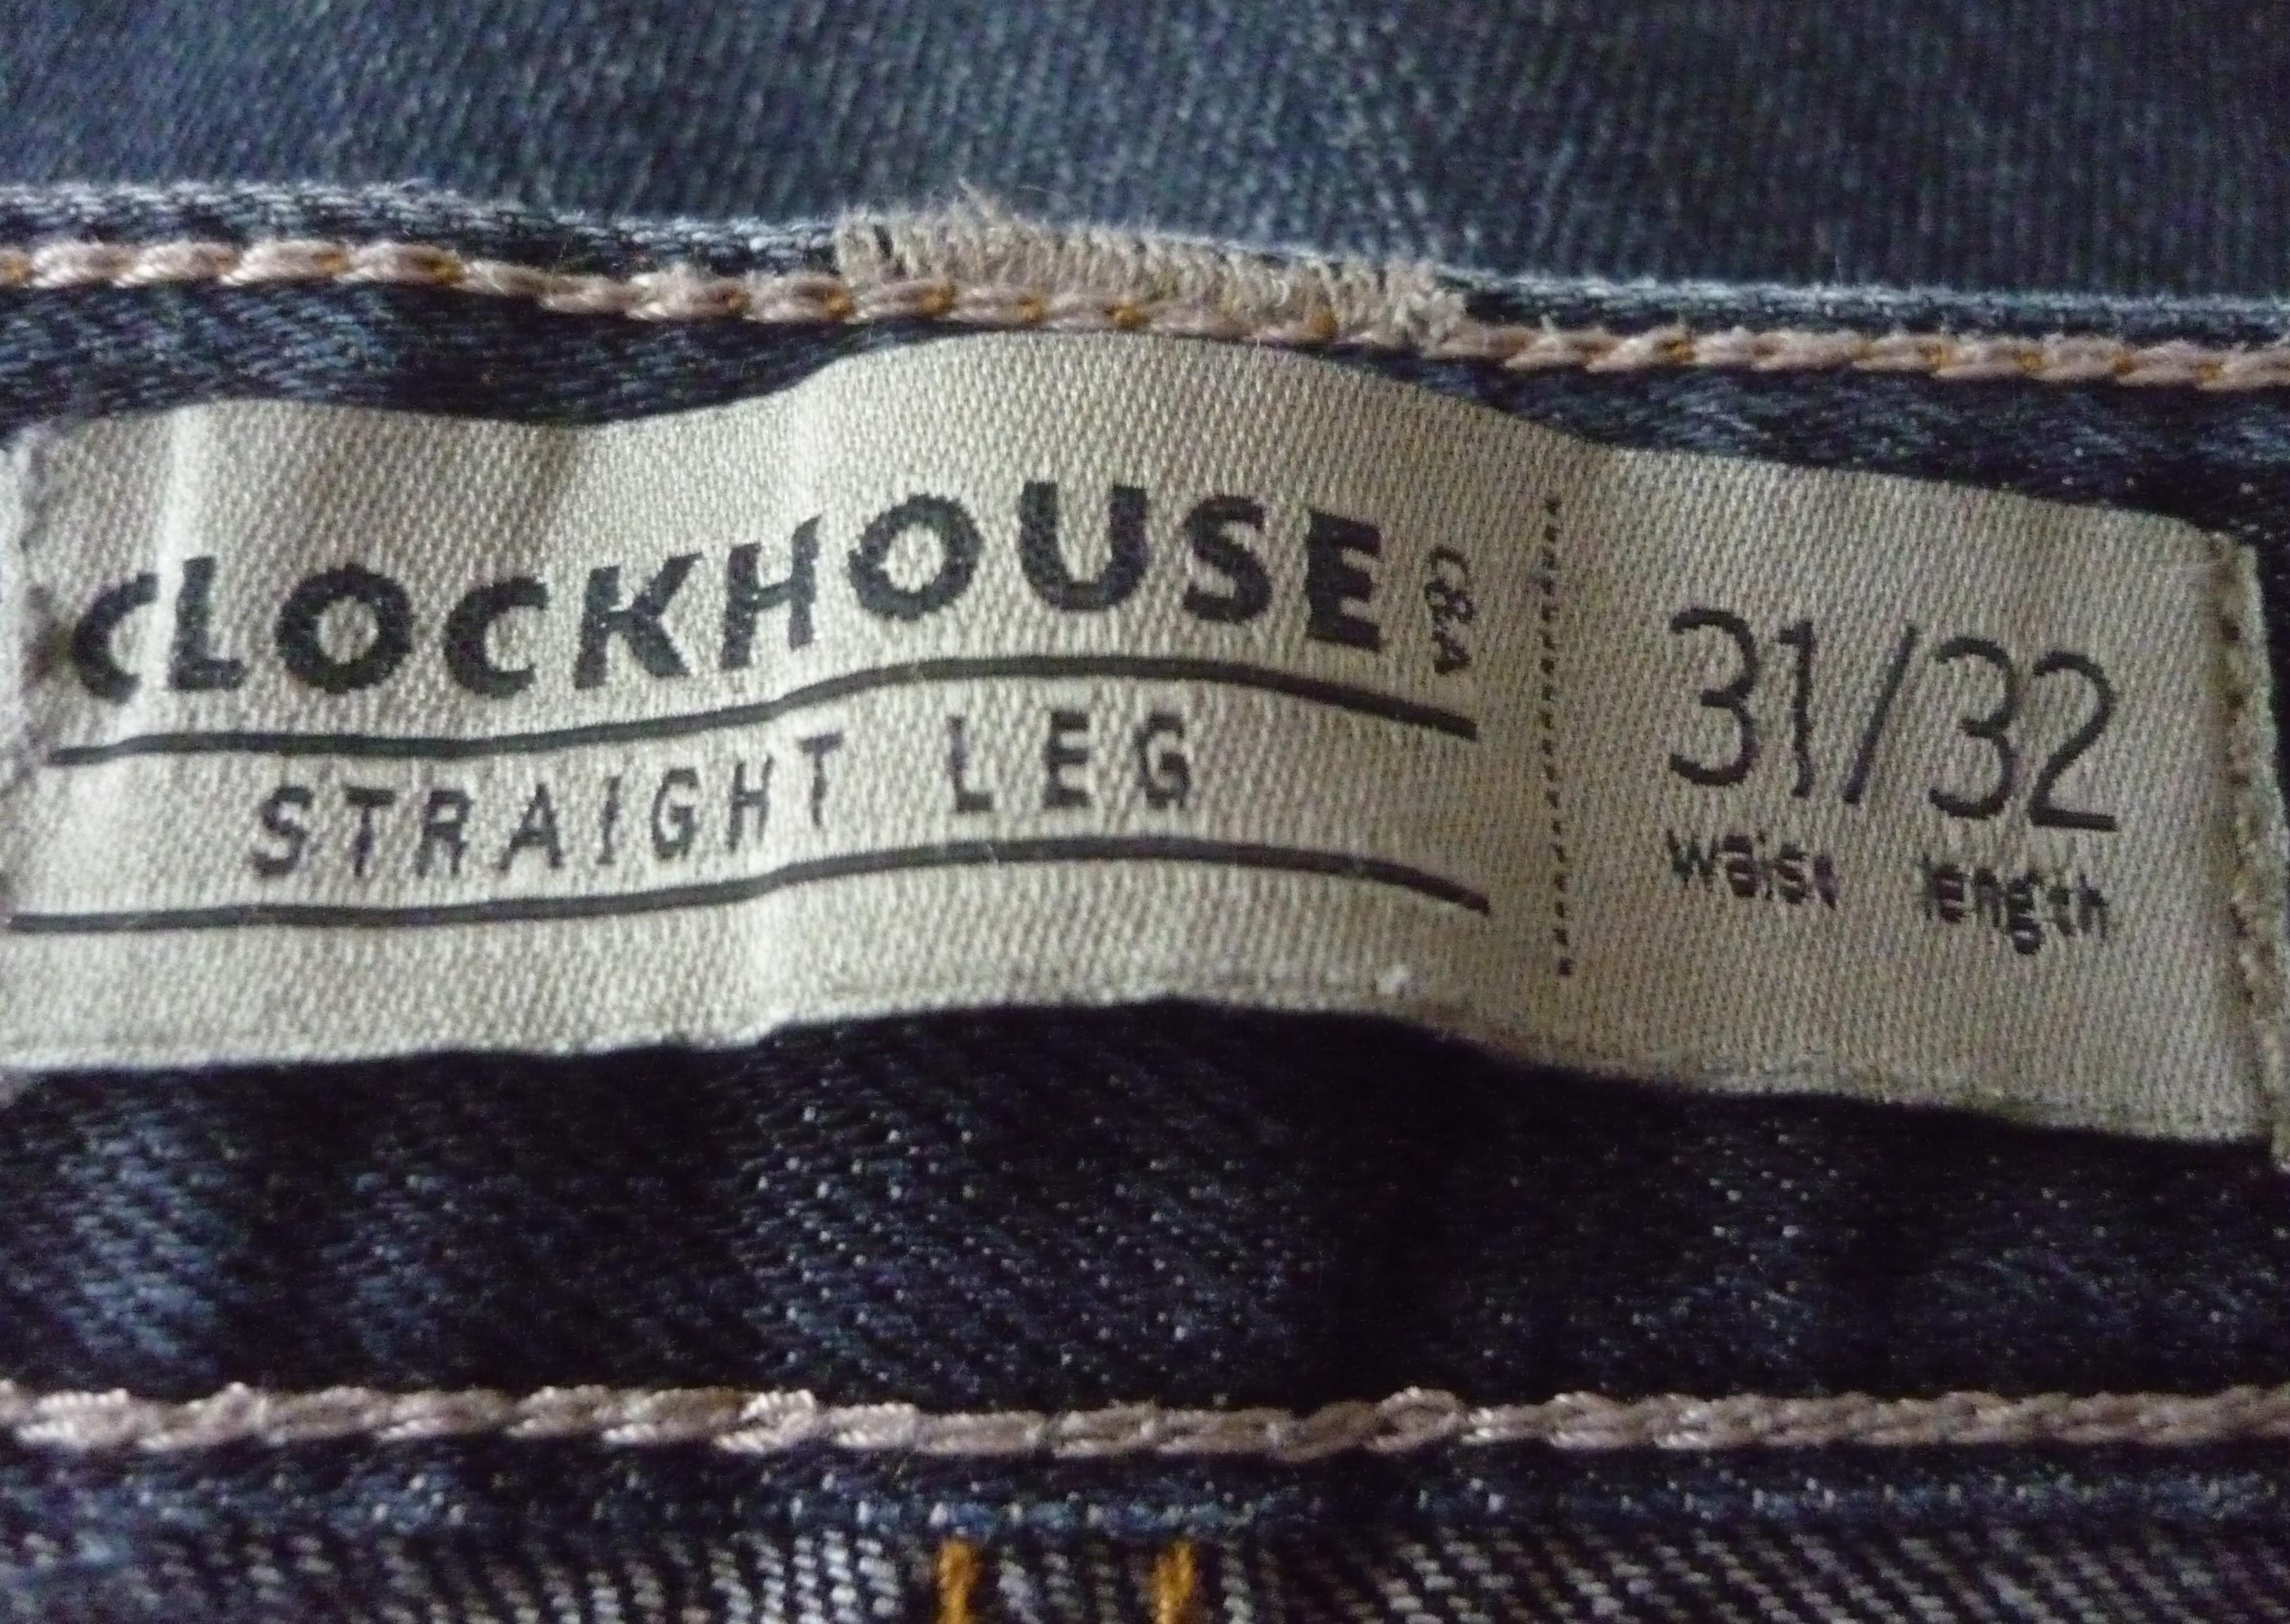 troc de troc jean brut clockhouse straight leg - taille 31/32 image 2